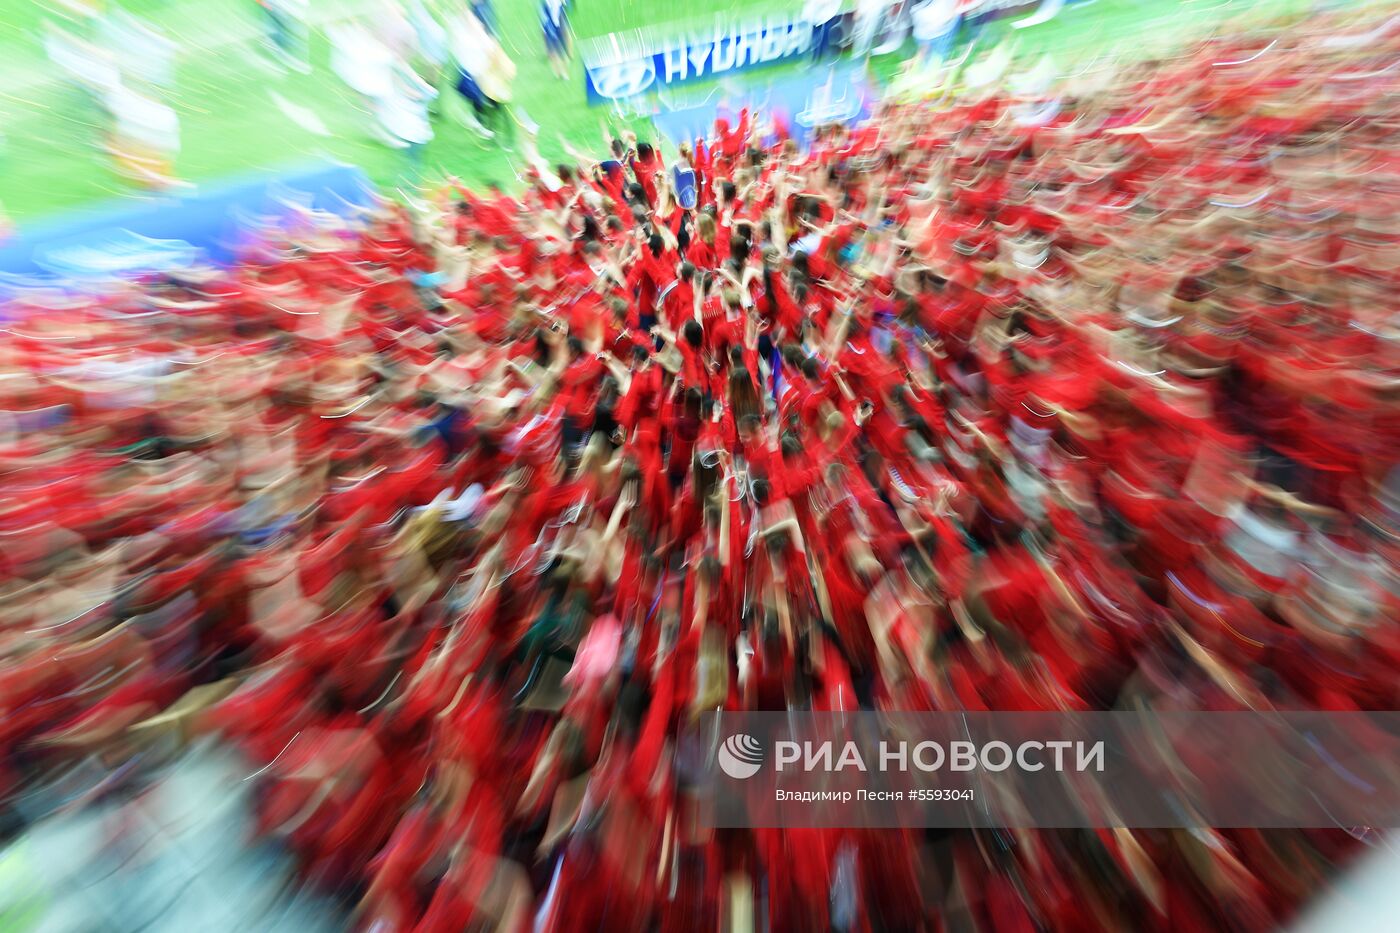 Прощание с волонтерами ЧМ-2018 по футболу на стадионе "Лужники"